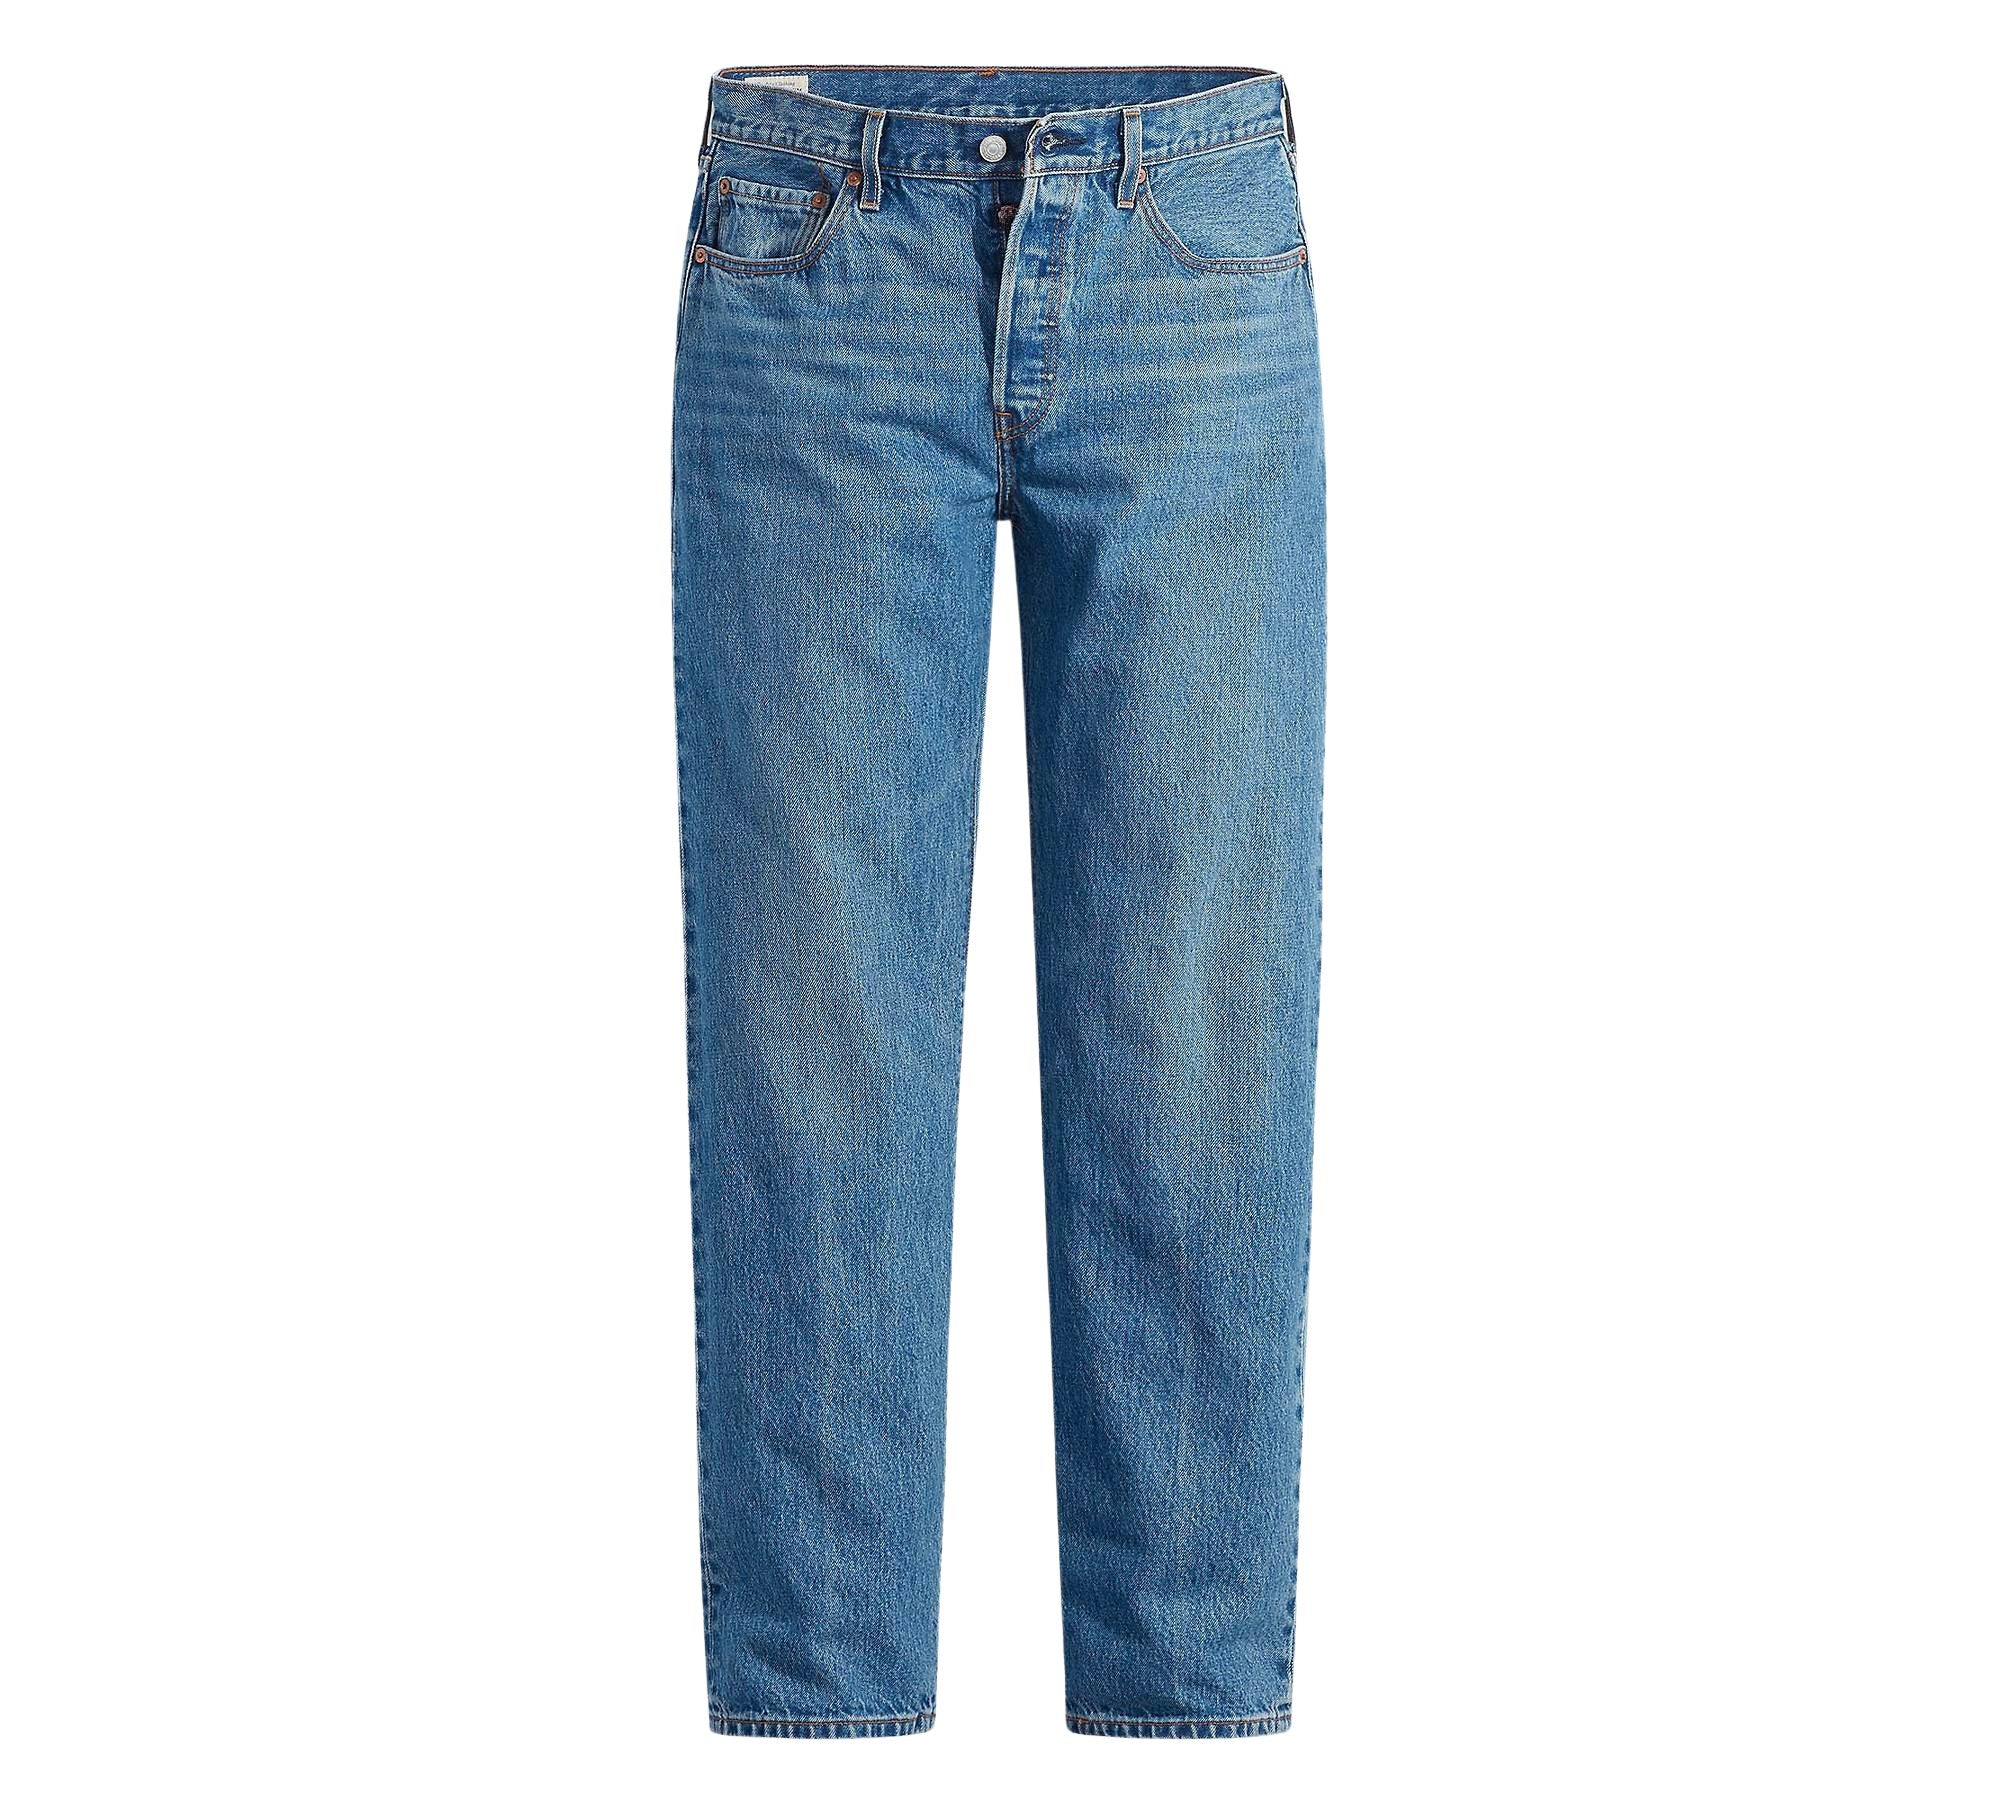 Vintage Levi's Classic Blue Jeans - Waist 30 - Length 34 - Vintage Superstore Online